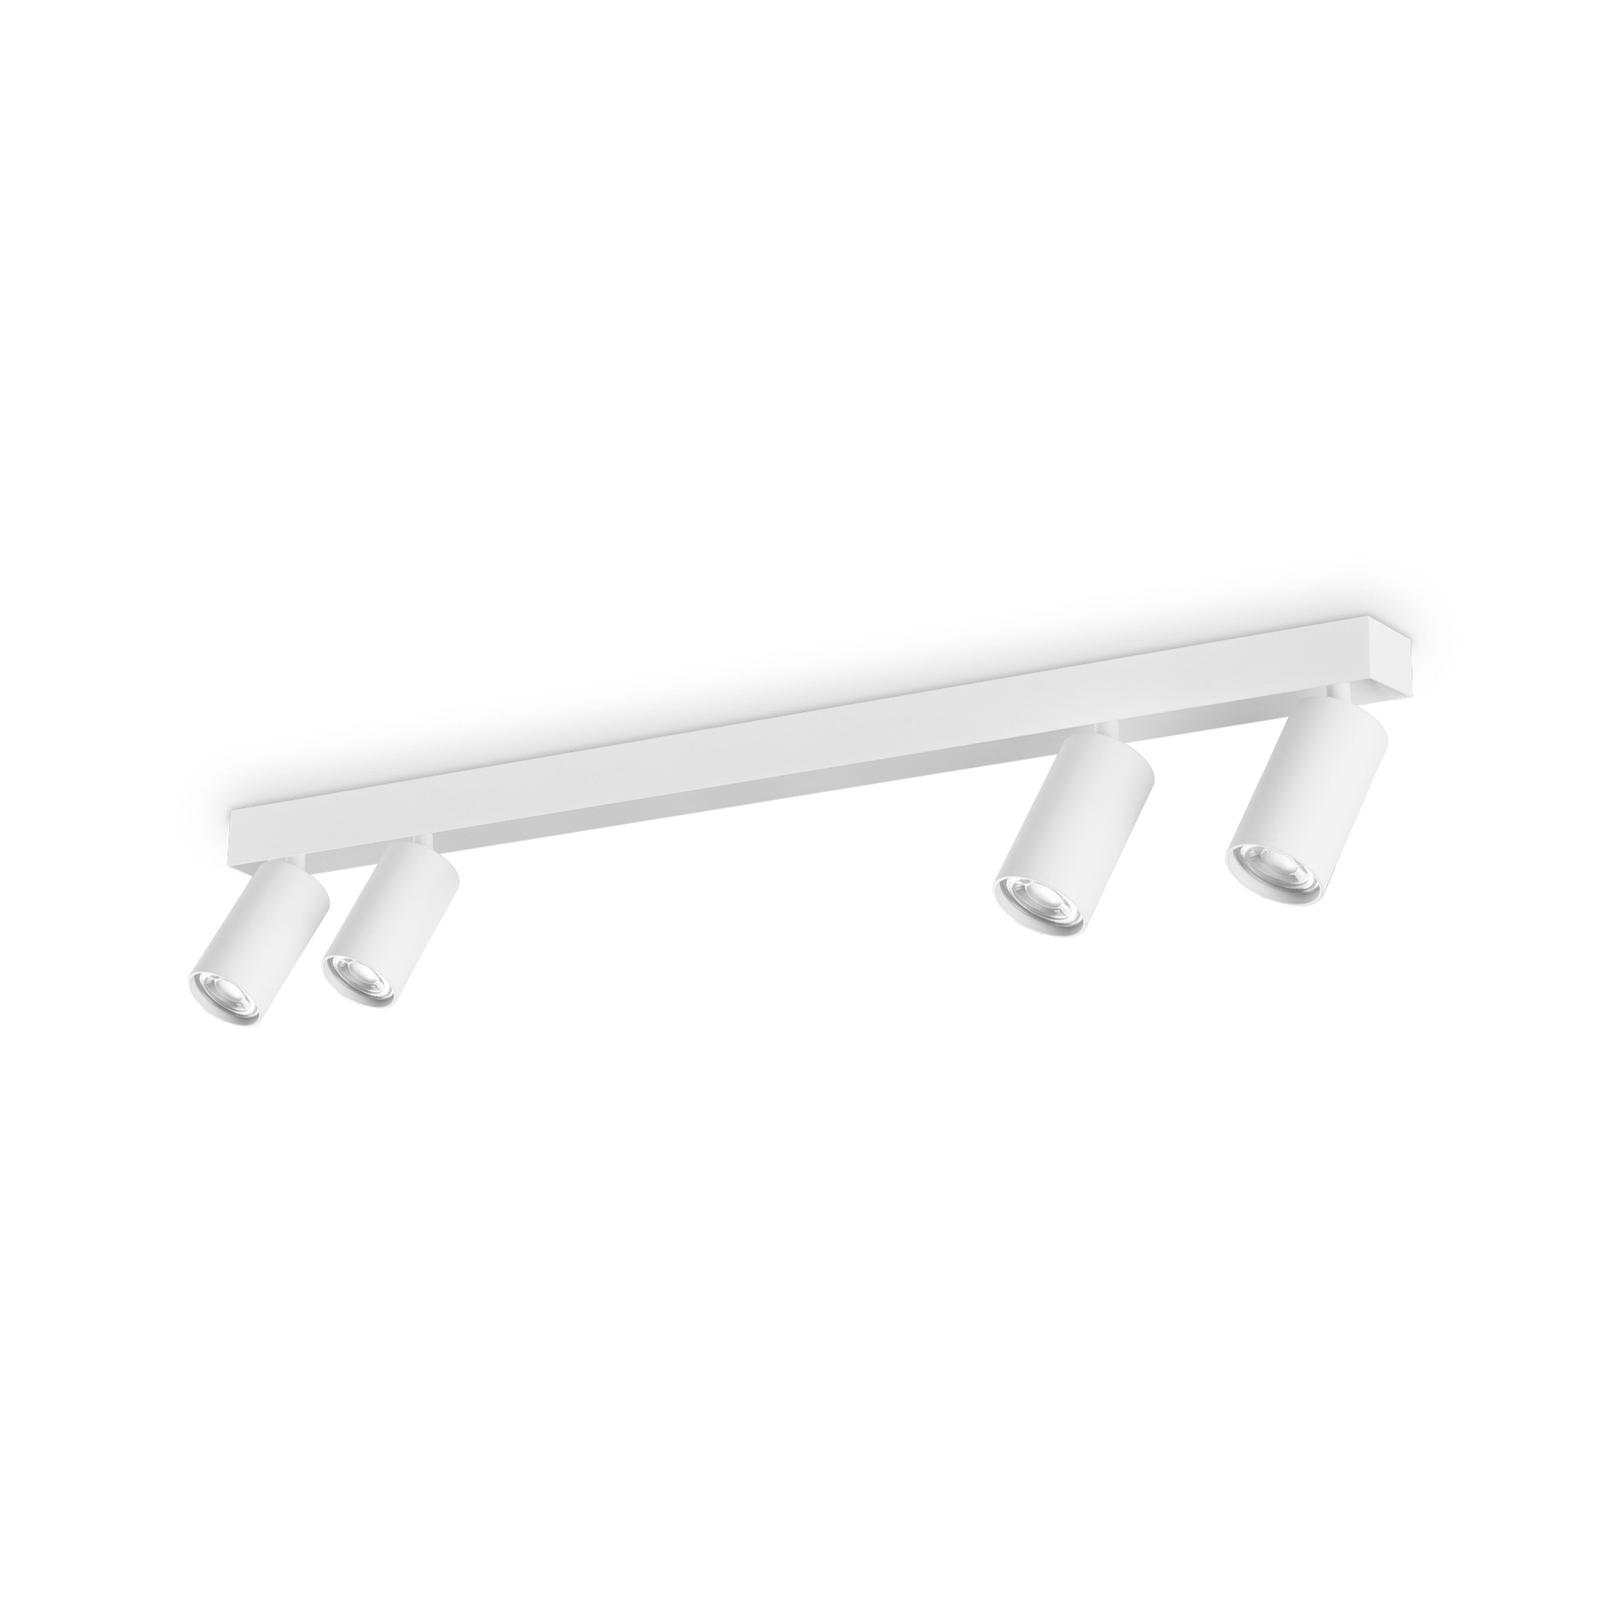 Ideal Lux spot pour plafond Profilo, blanc, à 4 lampes, métal